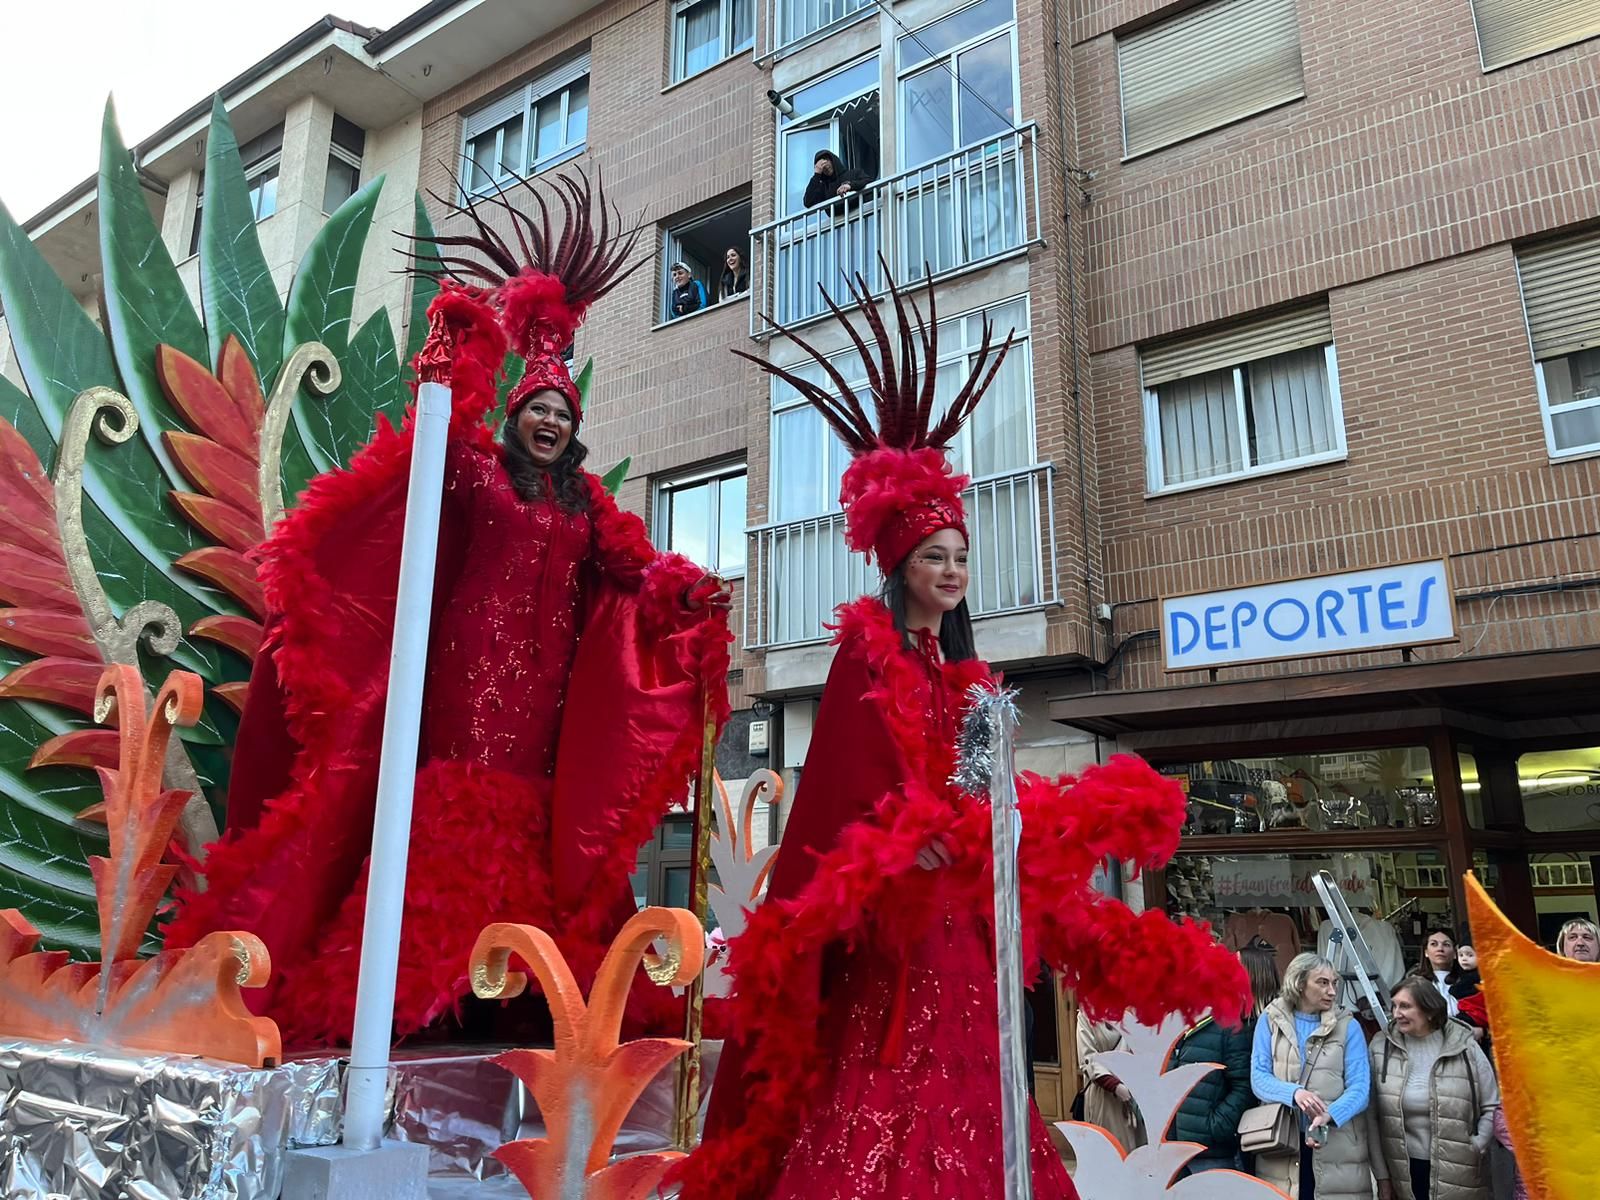 La locura del carnaval llena Posada de Llanes: así fue el multitudinario desfile